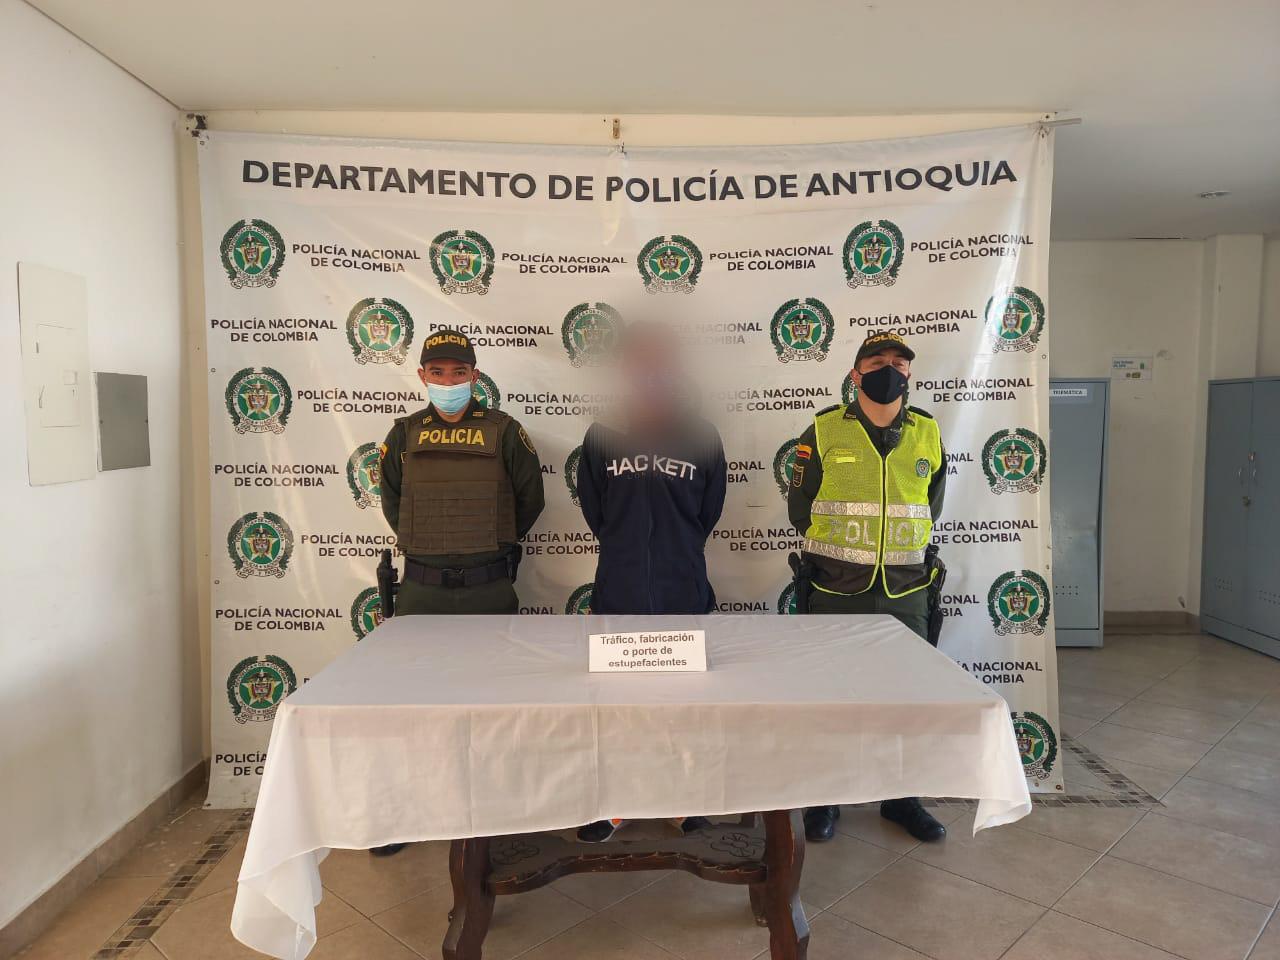 En lo que va corrido del 2021, las autoridades de La Ceja han realizado 8 capturas, principalmente por tráfico de estupefacientes